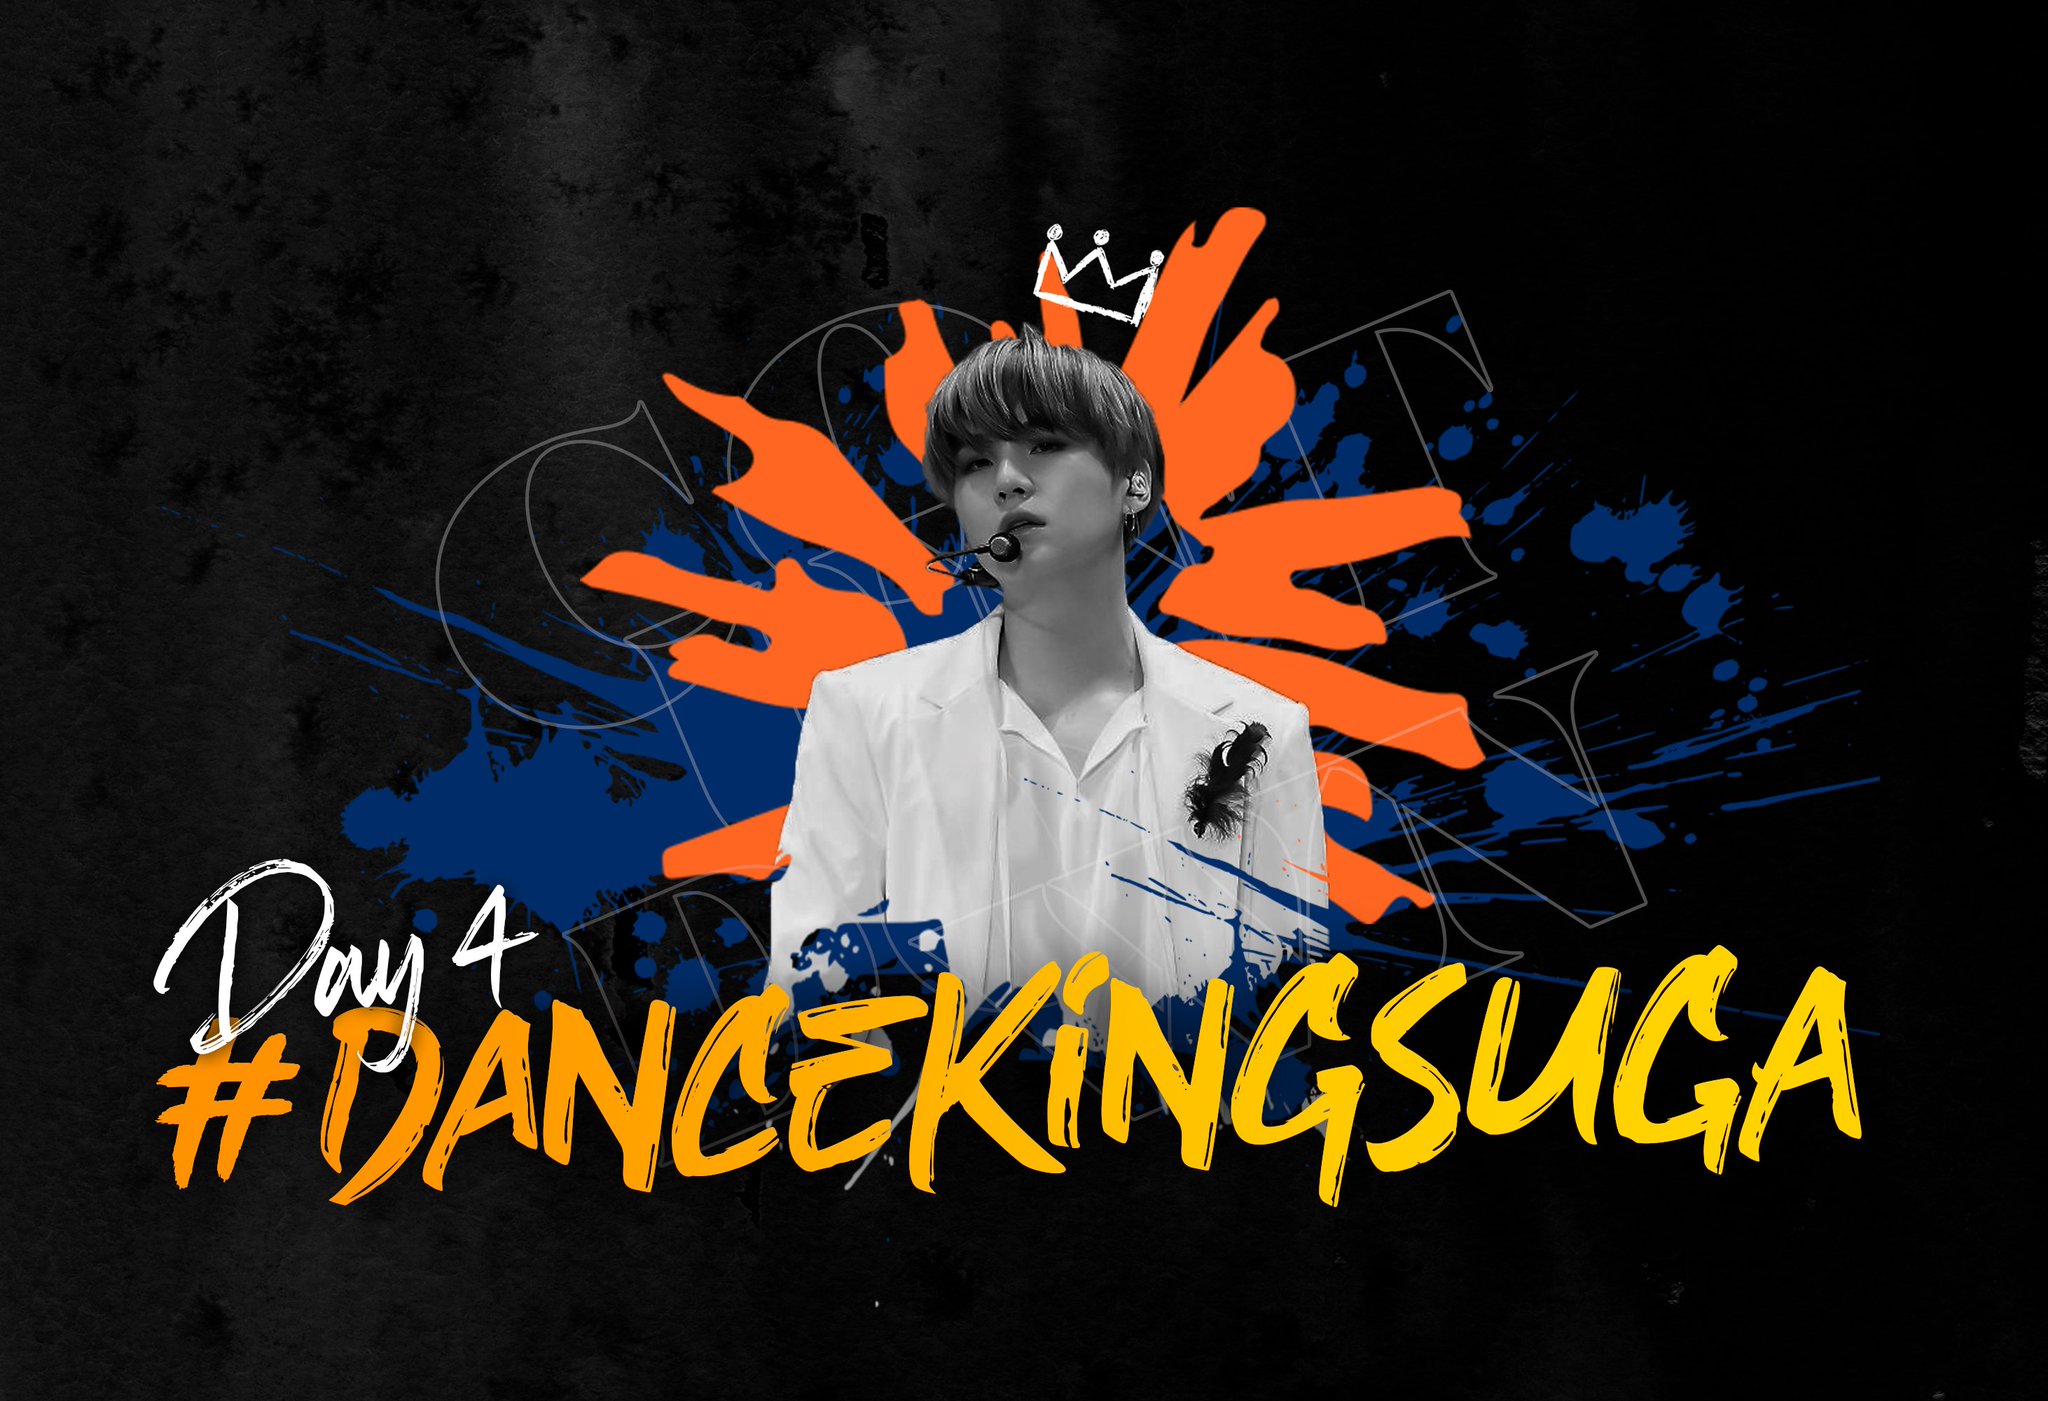 Dance King SUGA (hashtag to celebrate SUGA's dancing skills)